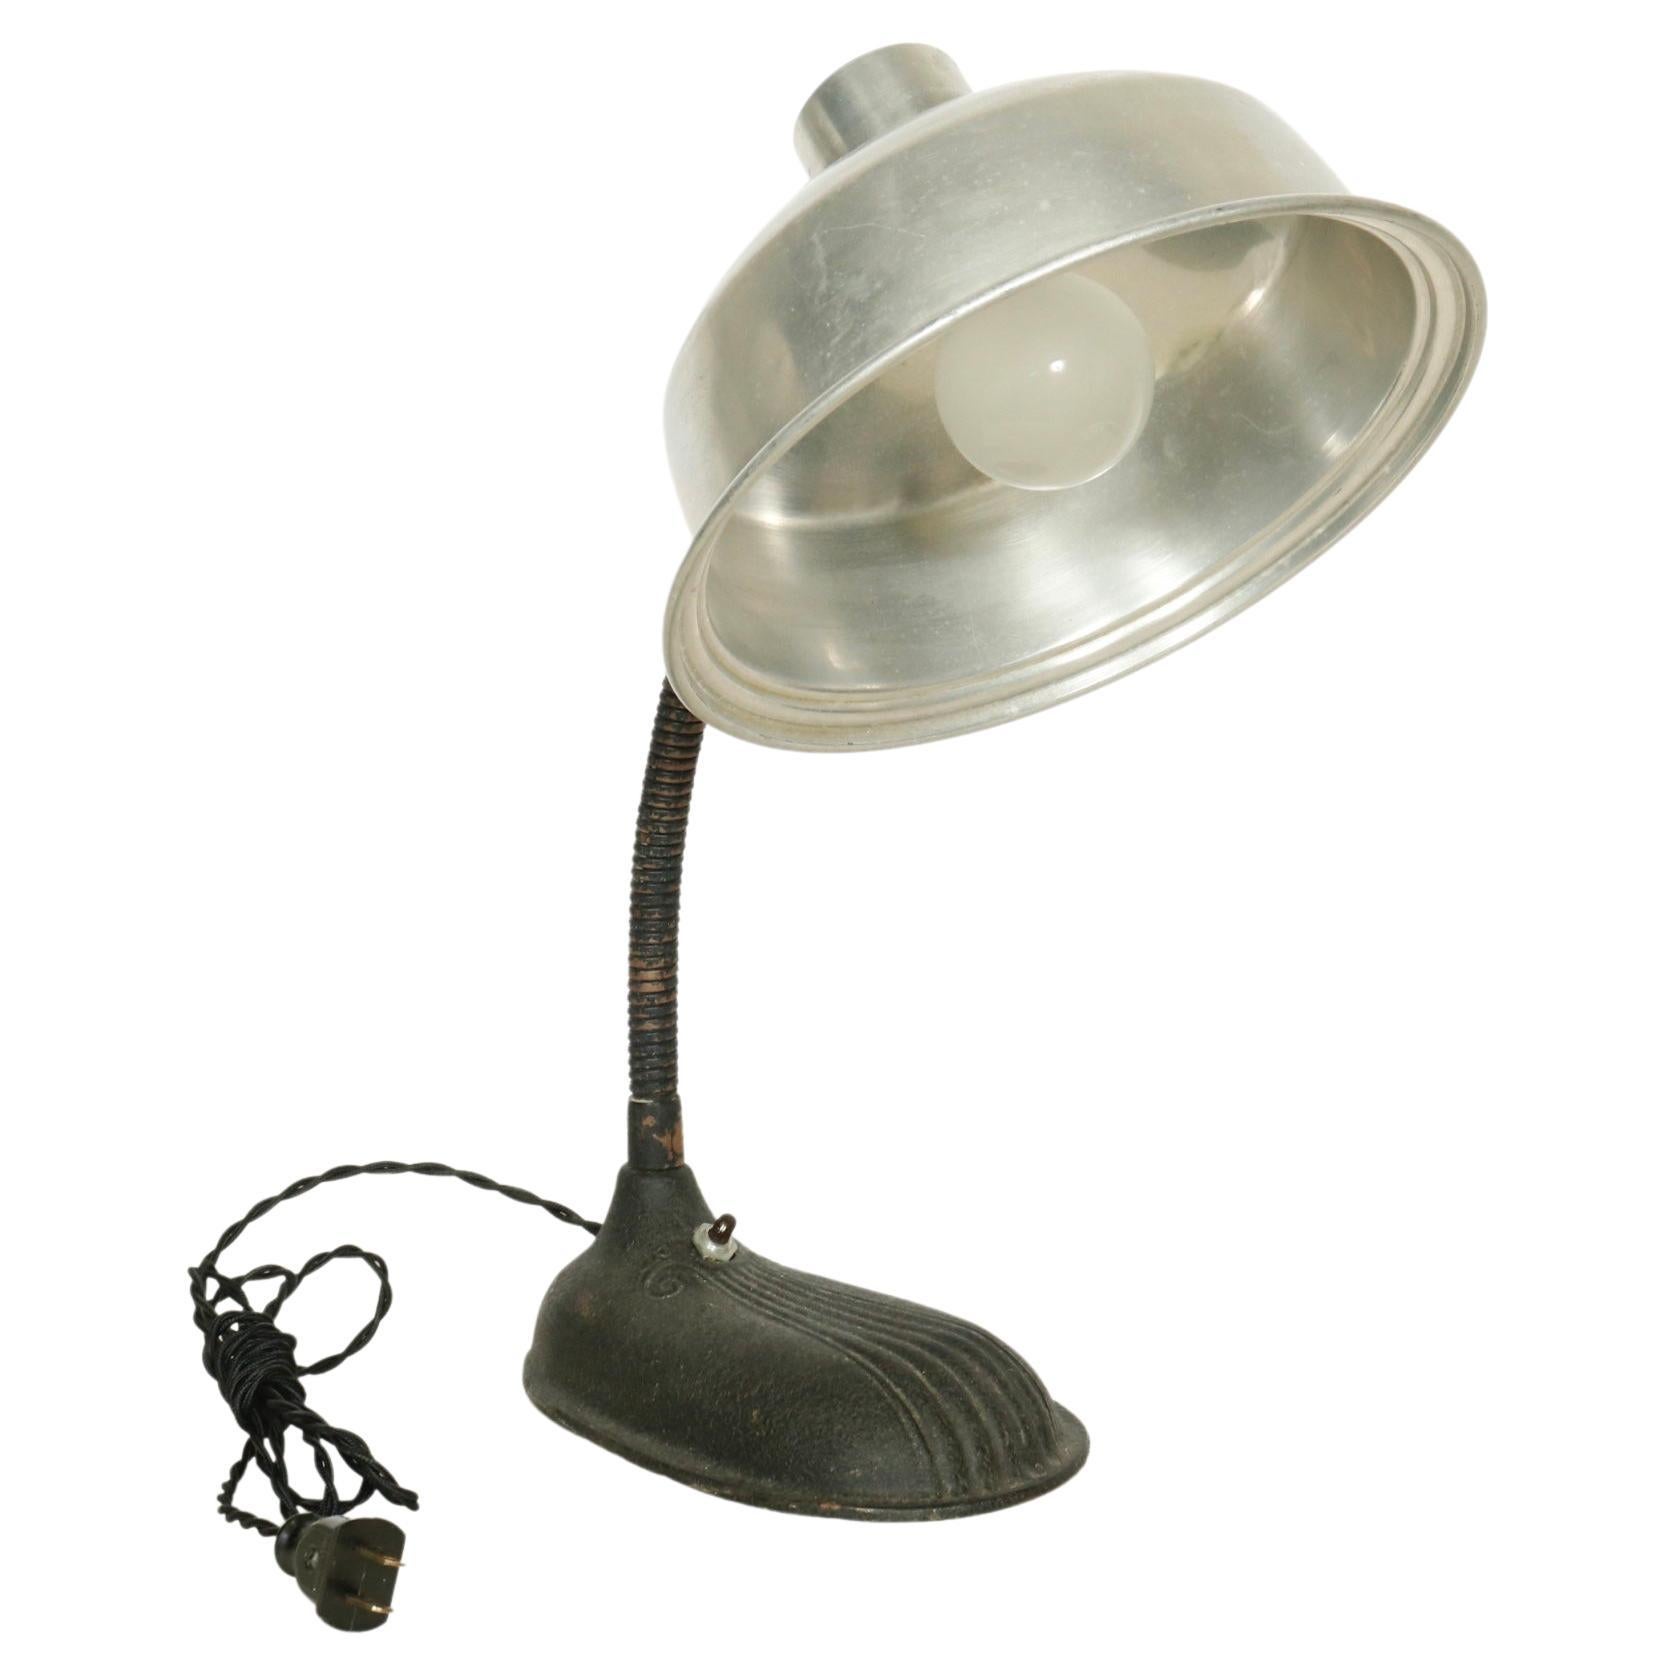 Vintage Industrial Desk Lamp For Sale